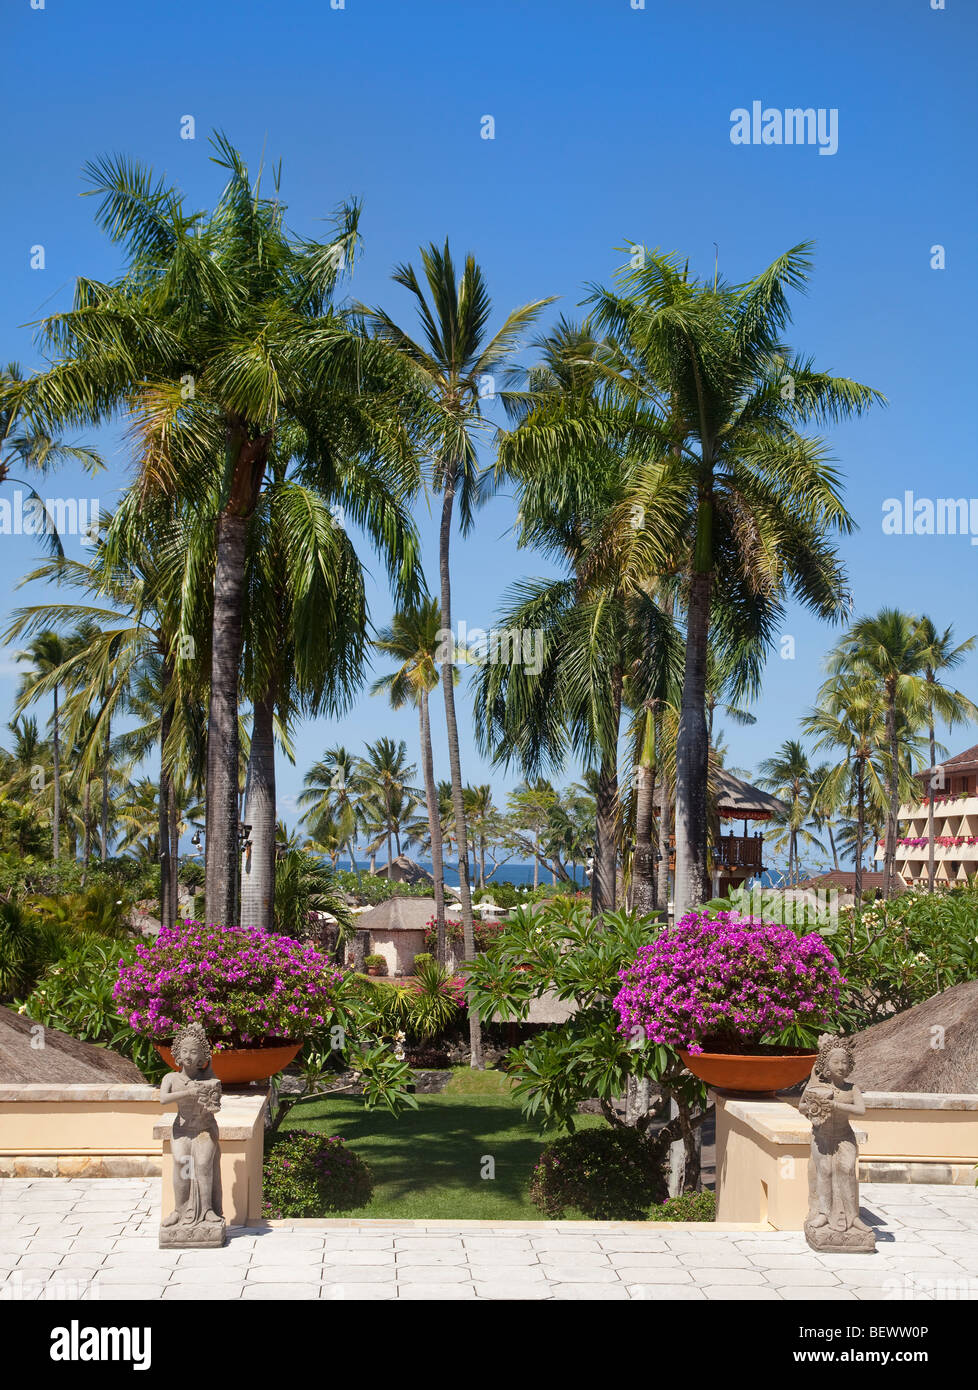 Los terrenos del hotel, de 5 estrellas, Bali, Indonesia. Día soleado, palmeras, playa en segundo plano. Foto de stock